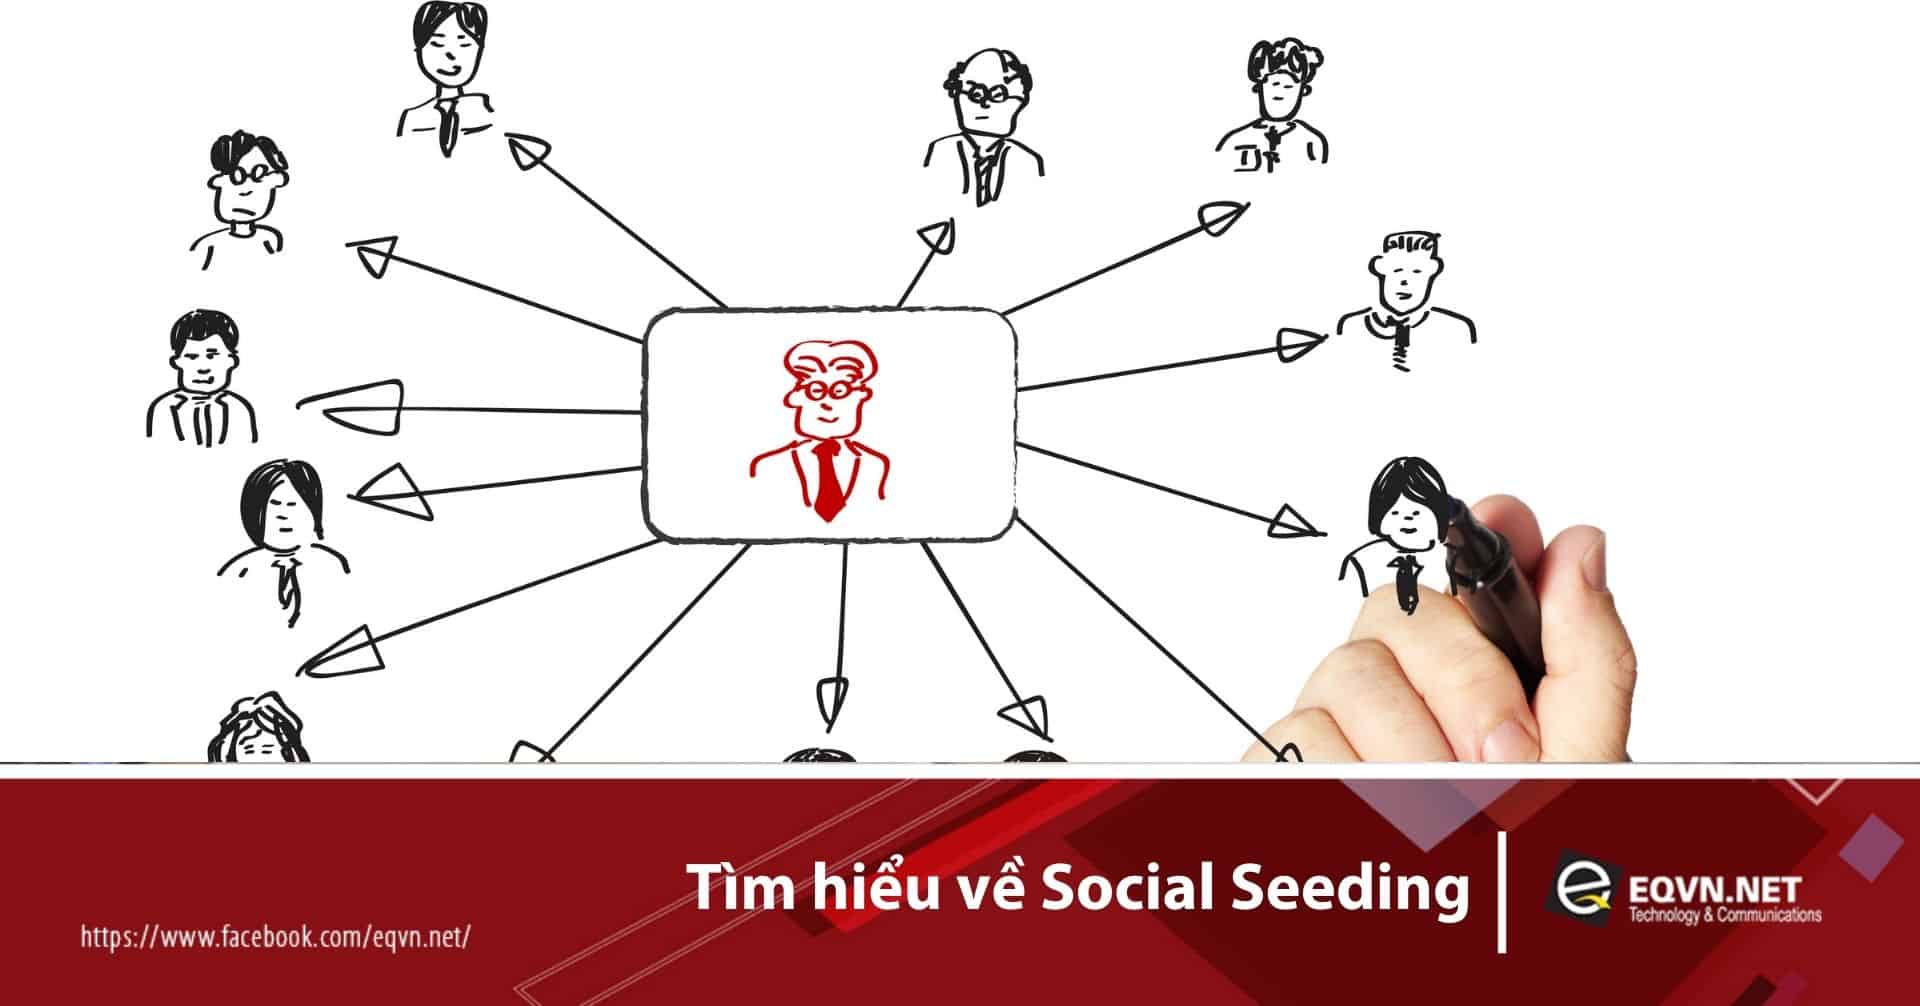 social seeding là gì